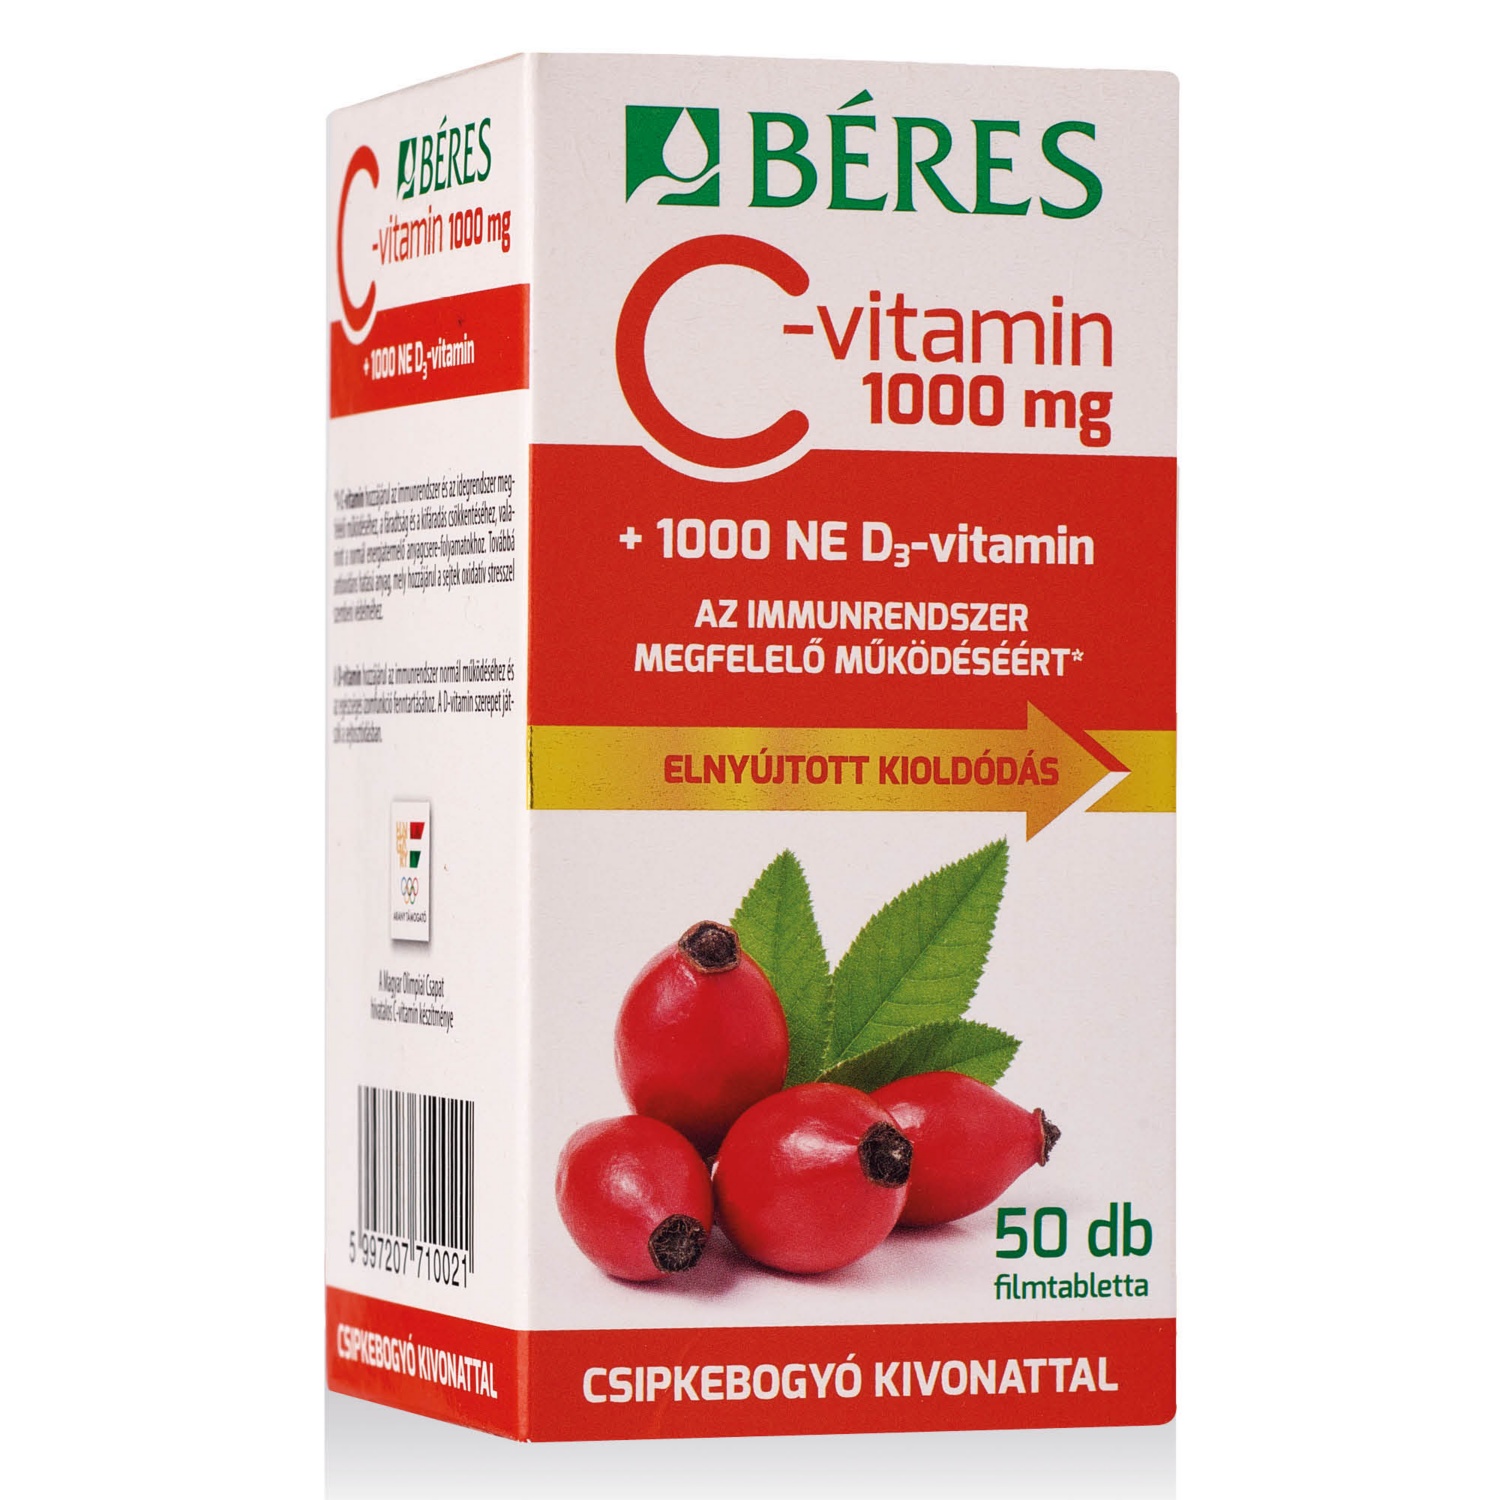 BÉRES C-vitamin 1000 mg, 50 darab